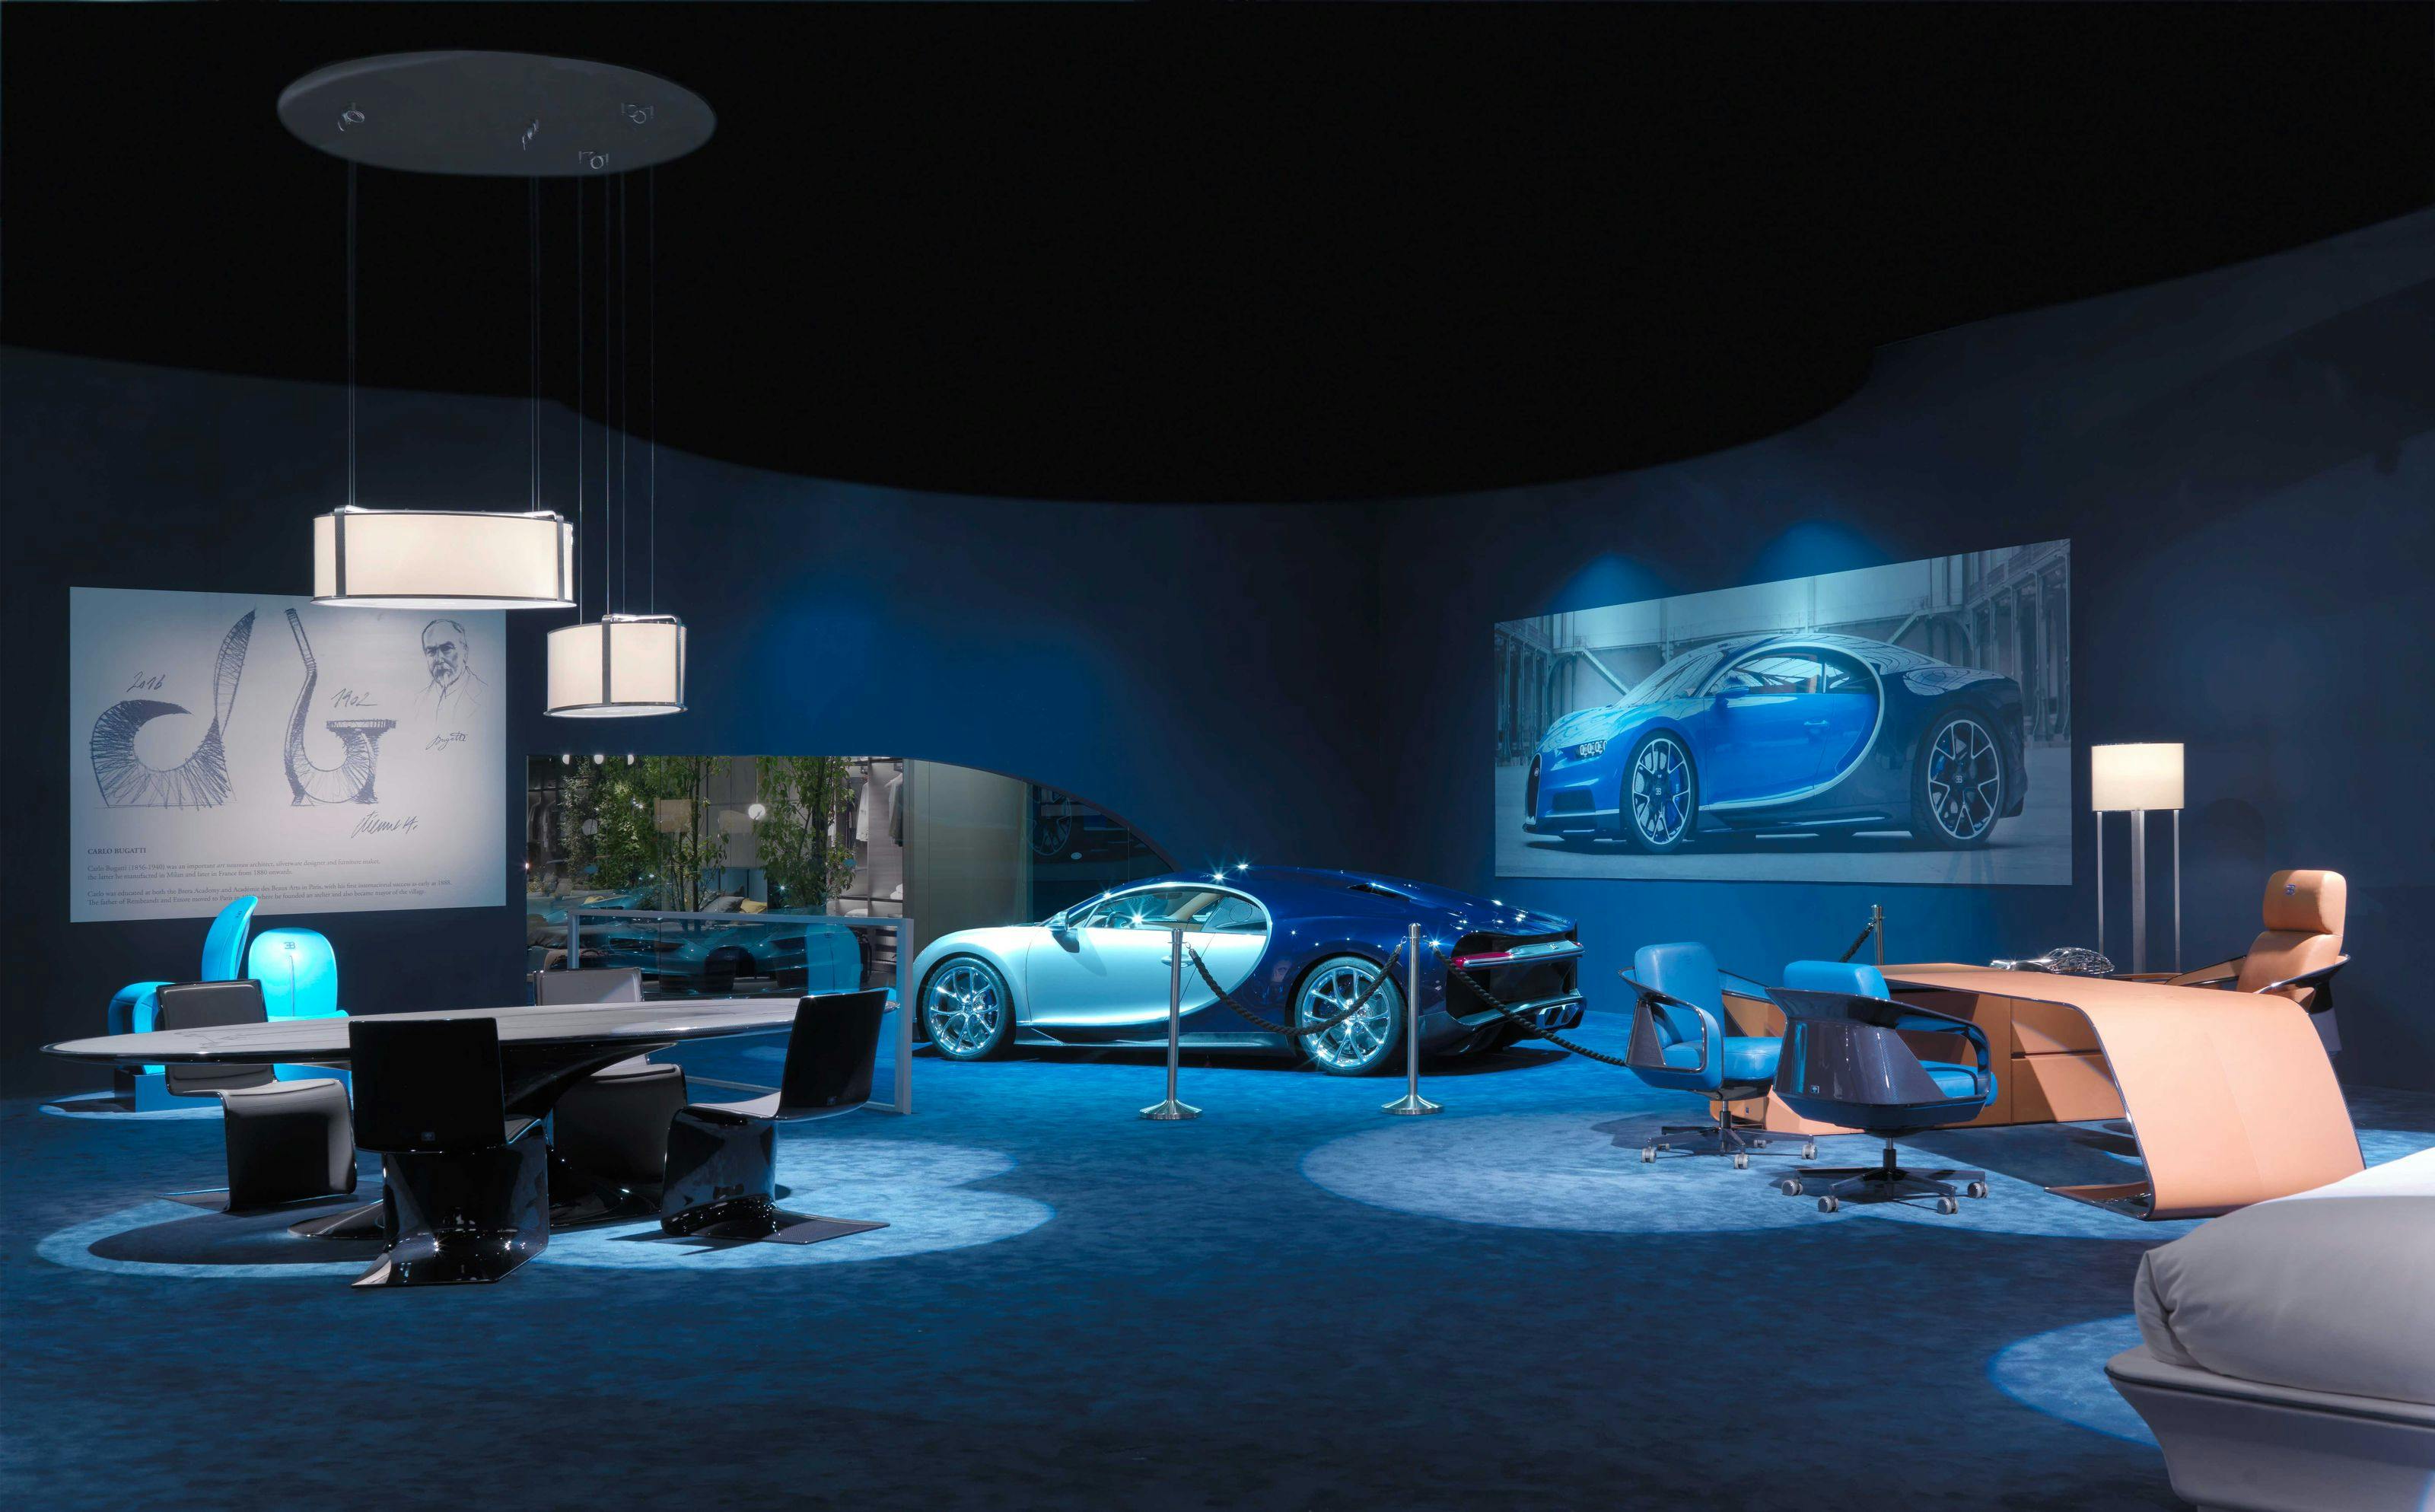 Salone Internazionale del Mobile 2016, Milan: Bugatti Automobiles S.A.S. and Luxury Living Group launch the Bugatti Home Collection